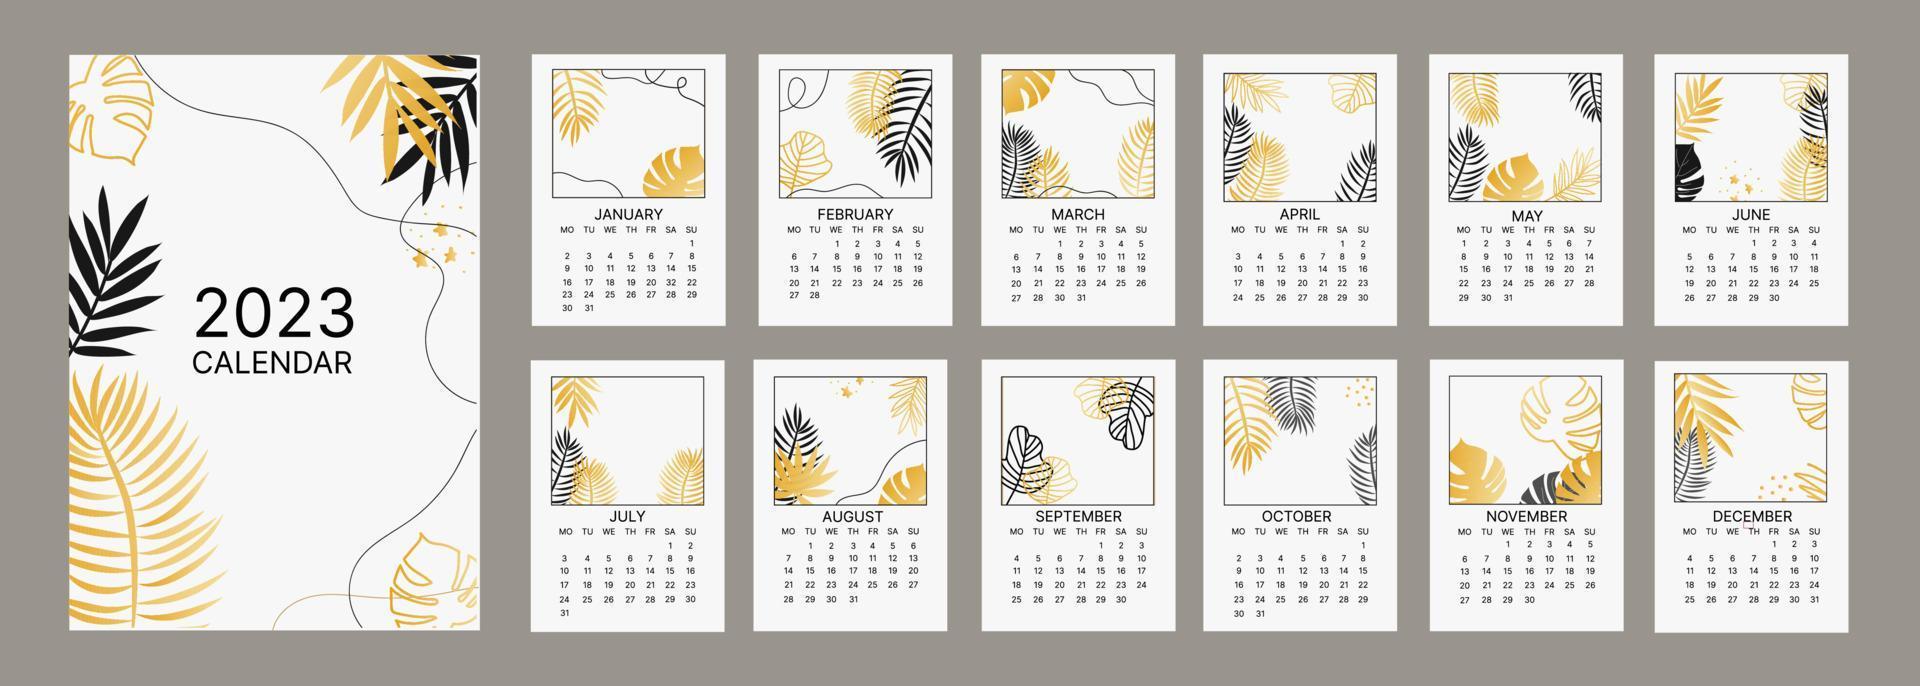 calendário mensal clássico para 2023. calendário com folhas de palmeira e monstera, cor branca e dourada. vetor